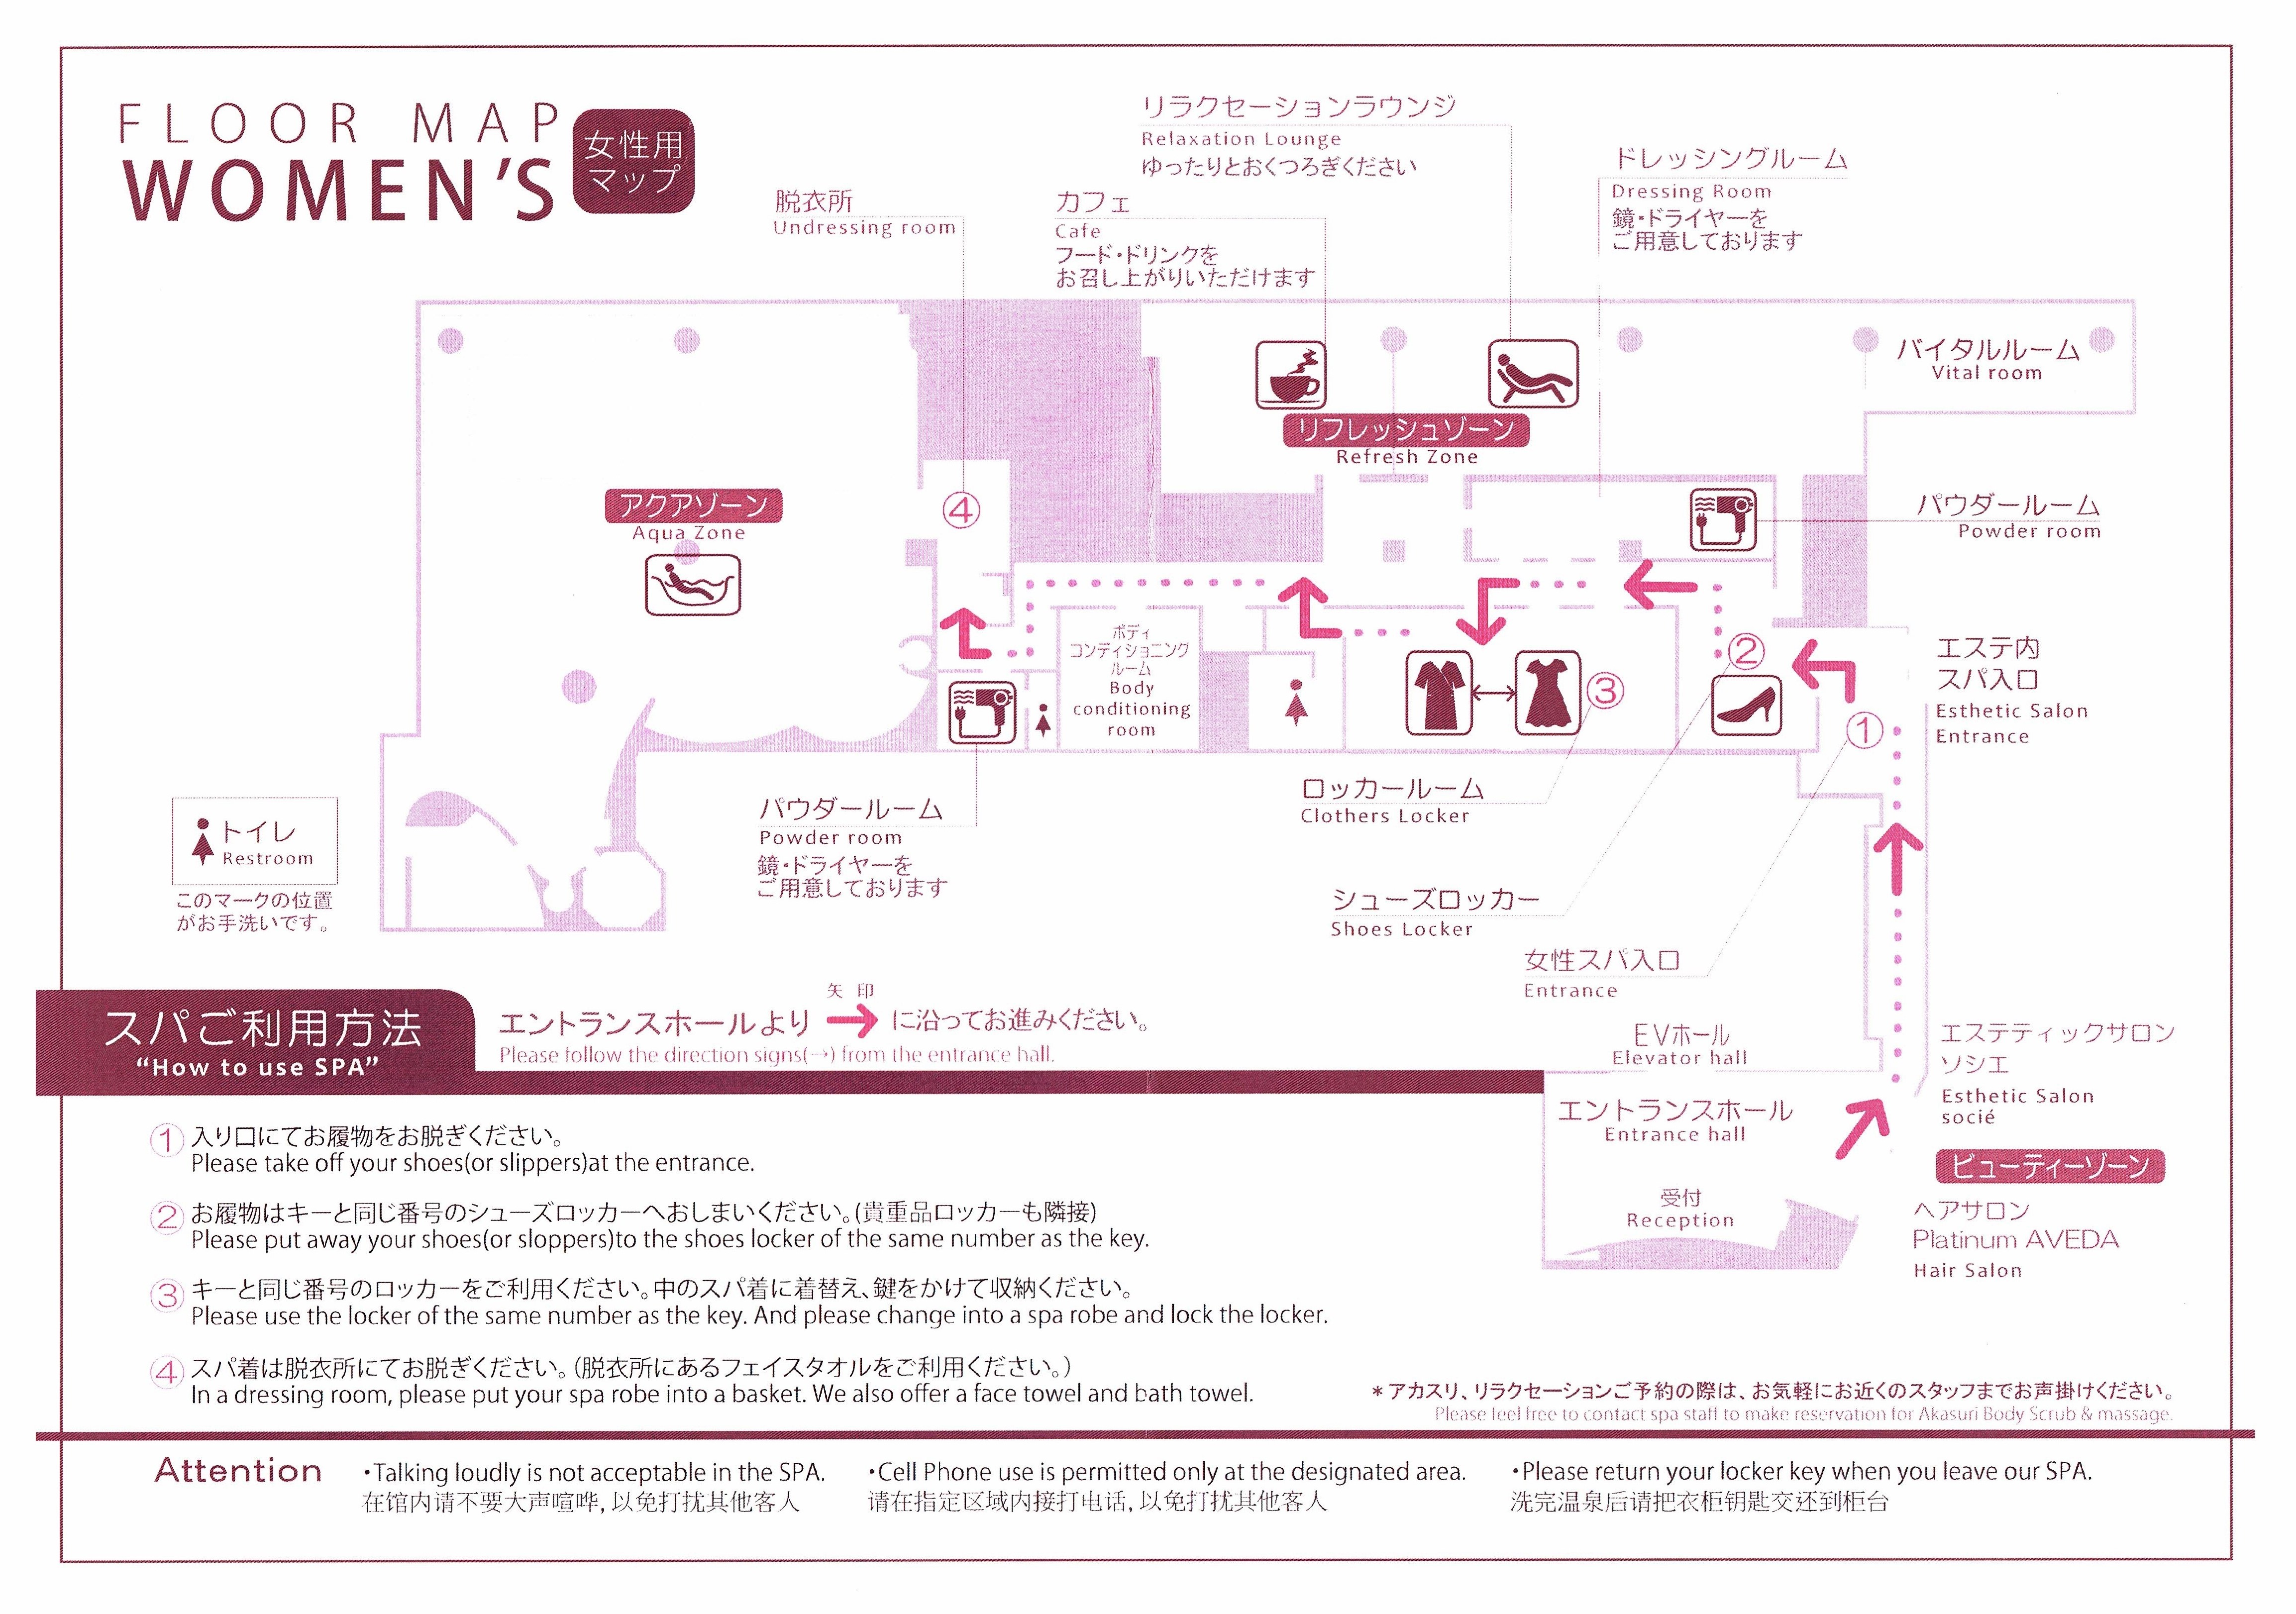 JRタワーホテル日航札幌のスパ「プラウブラン」の女性用フロアマップ